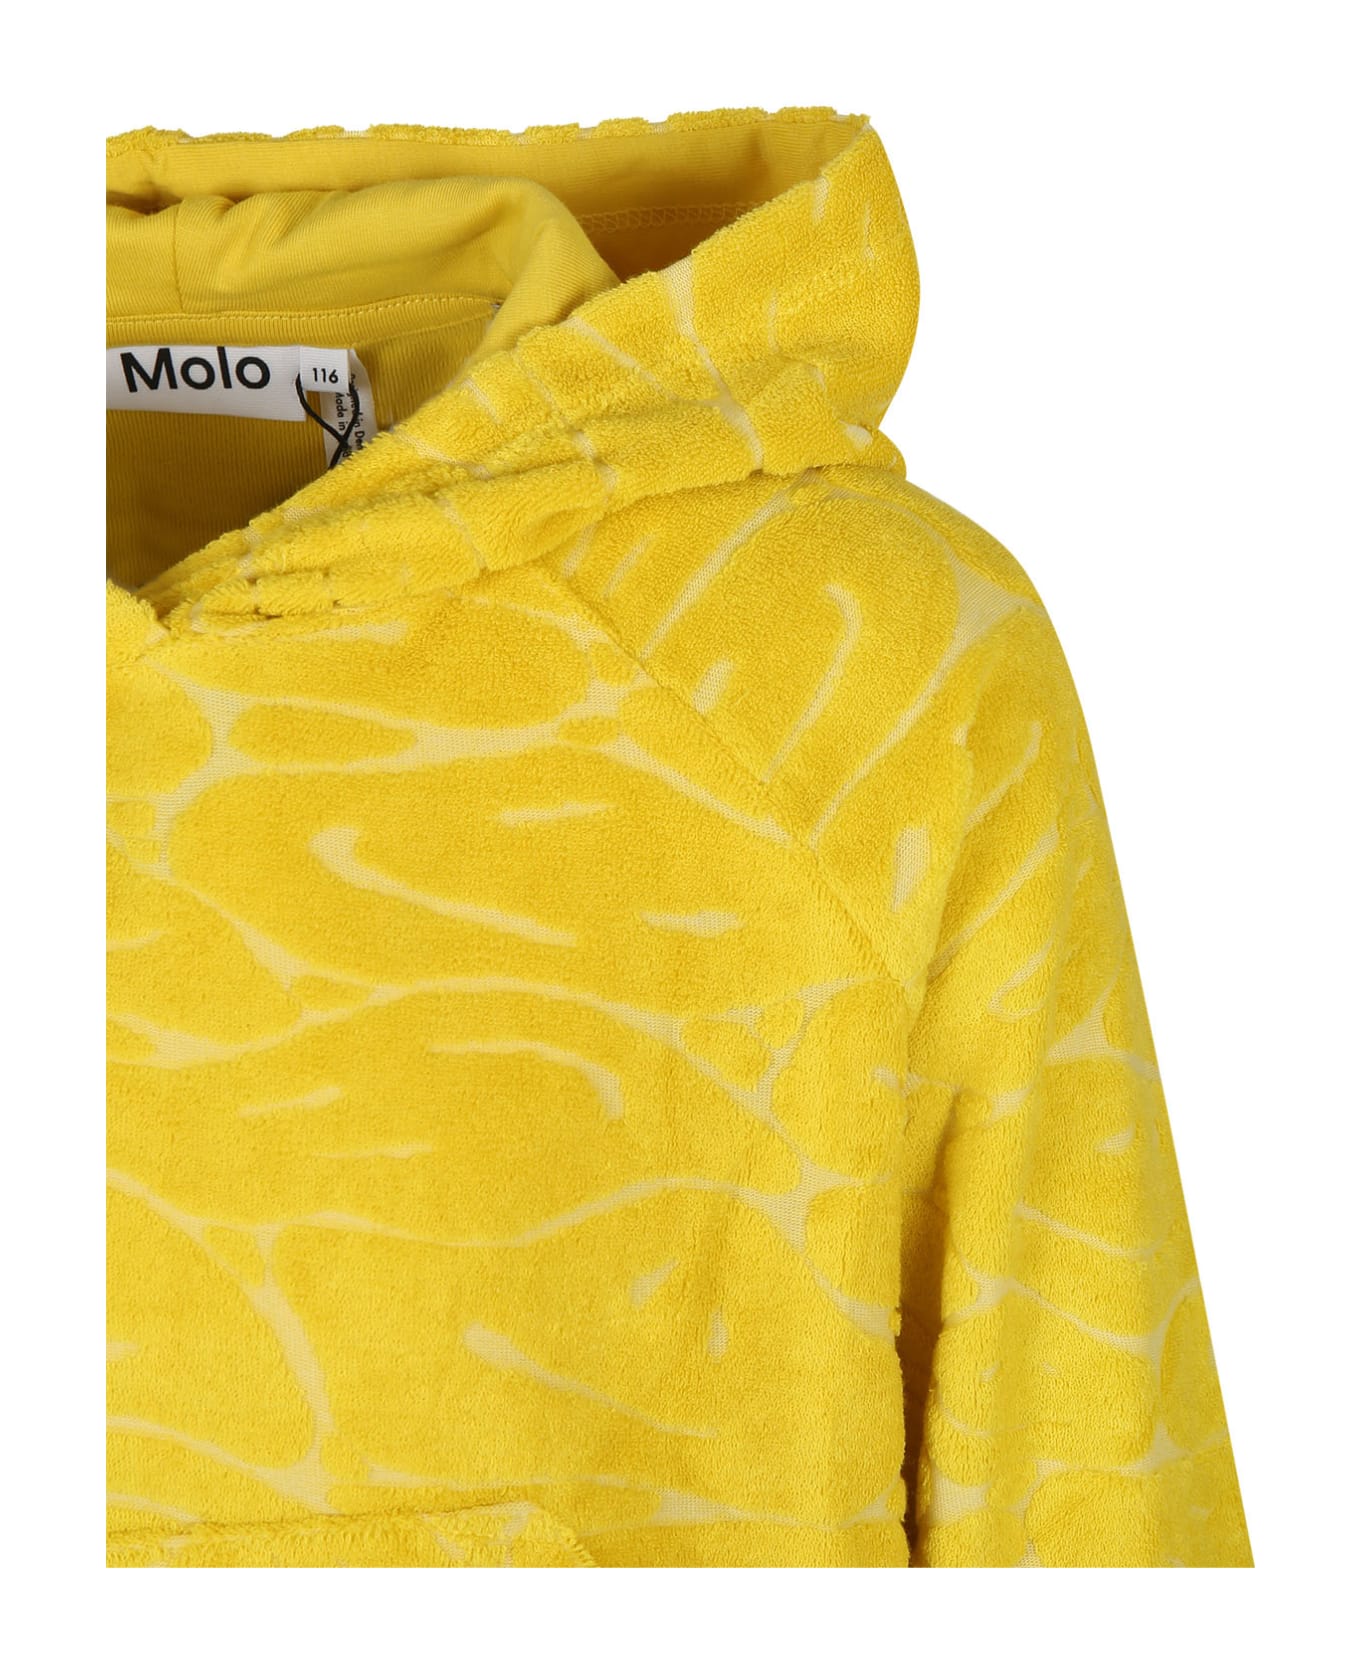 Molo Yellow Sweatshirt For Girl With Smiley - Yellow